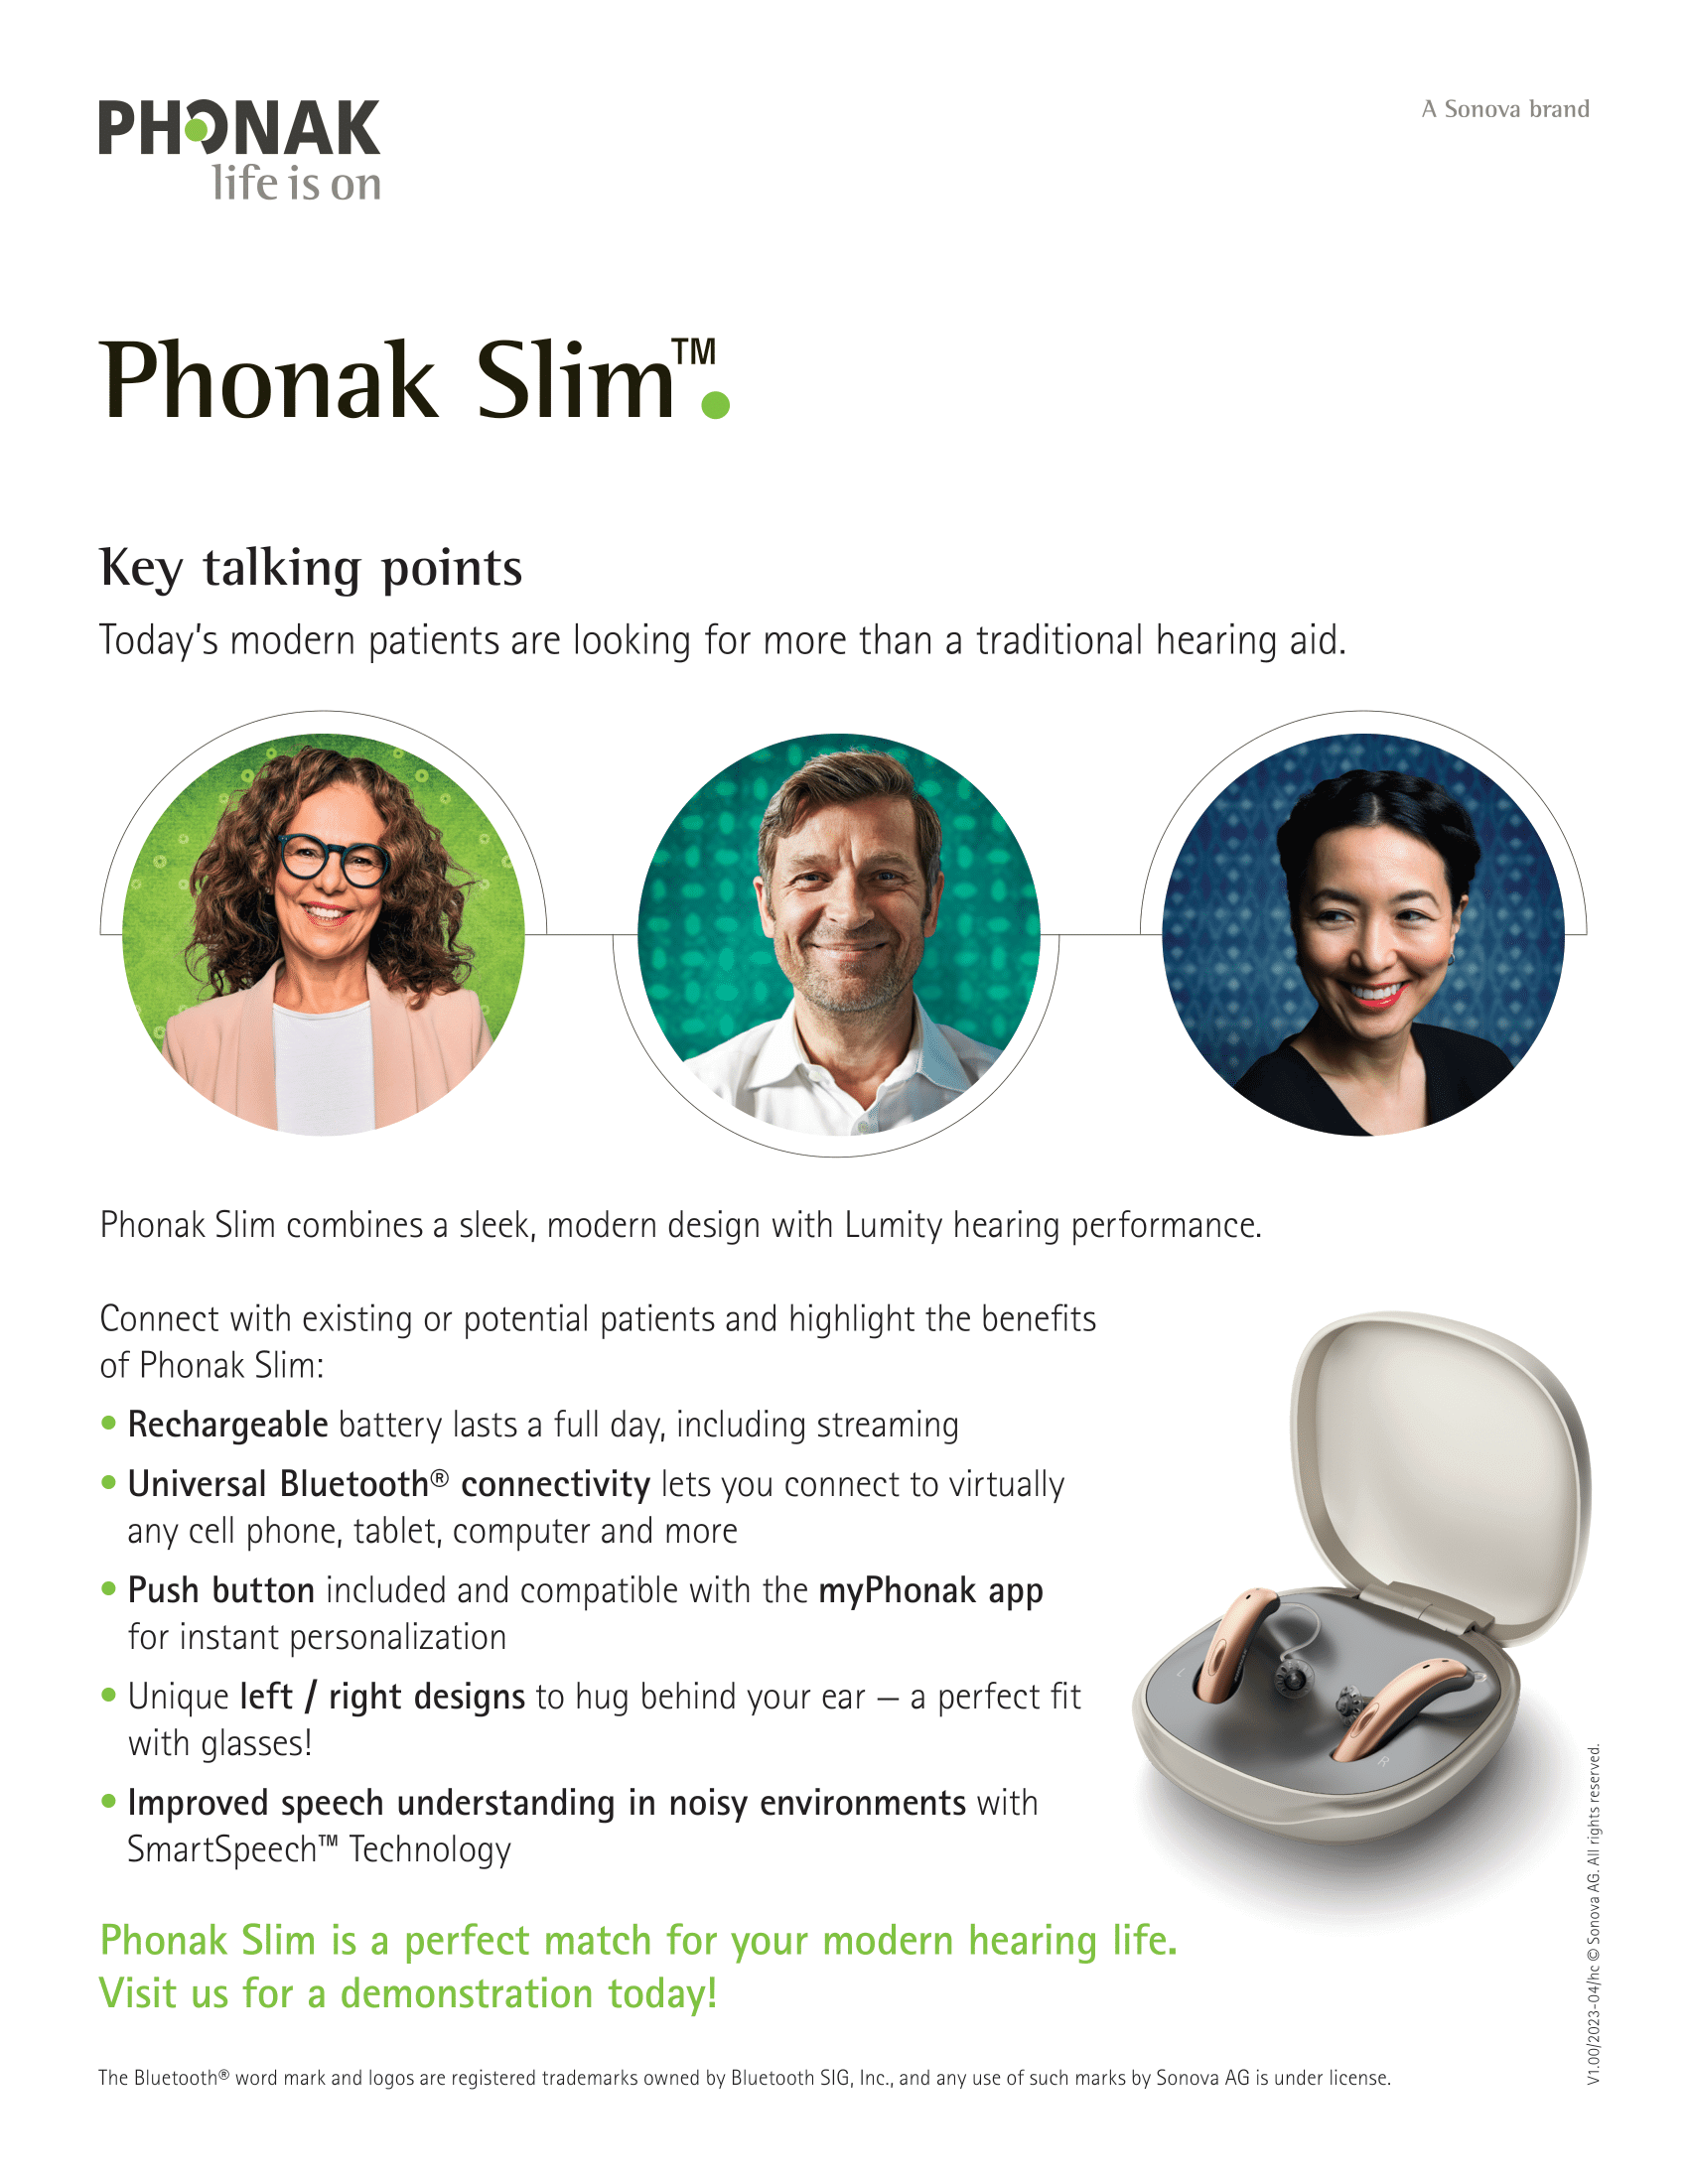 Phonak Slim